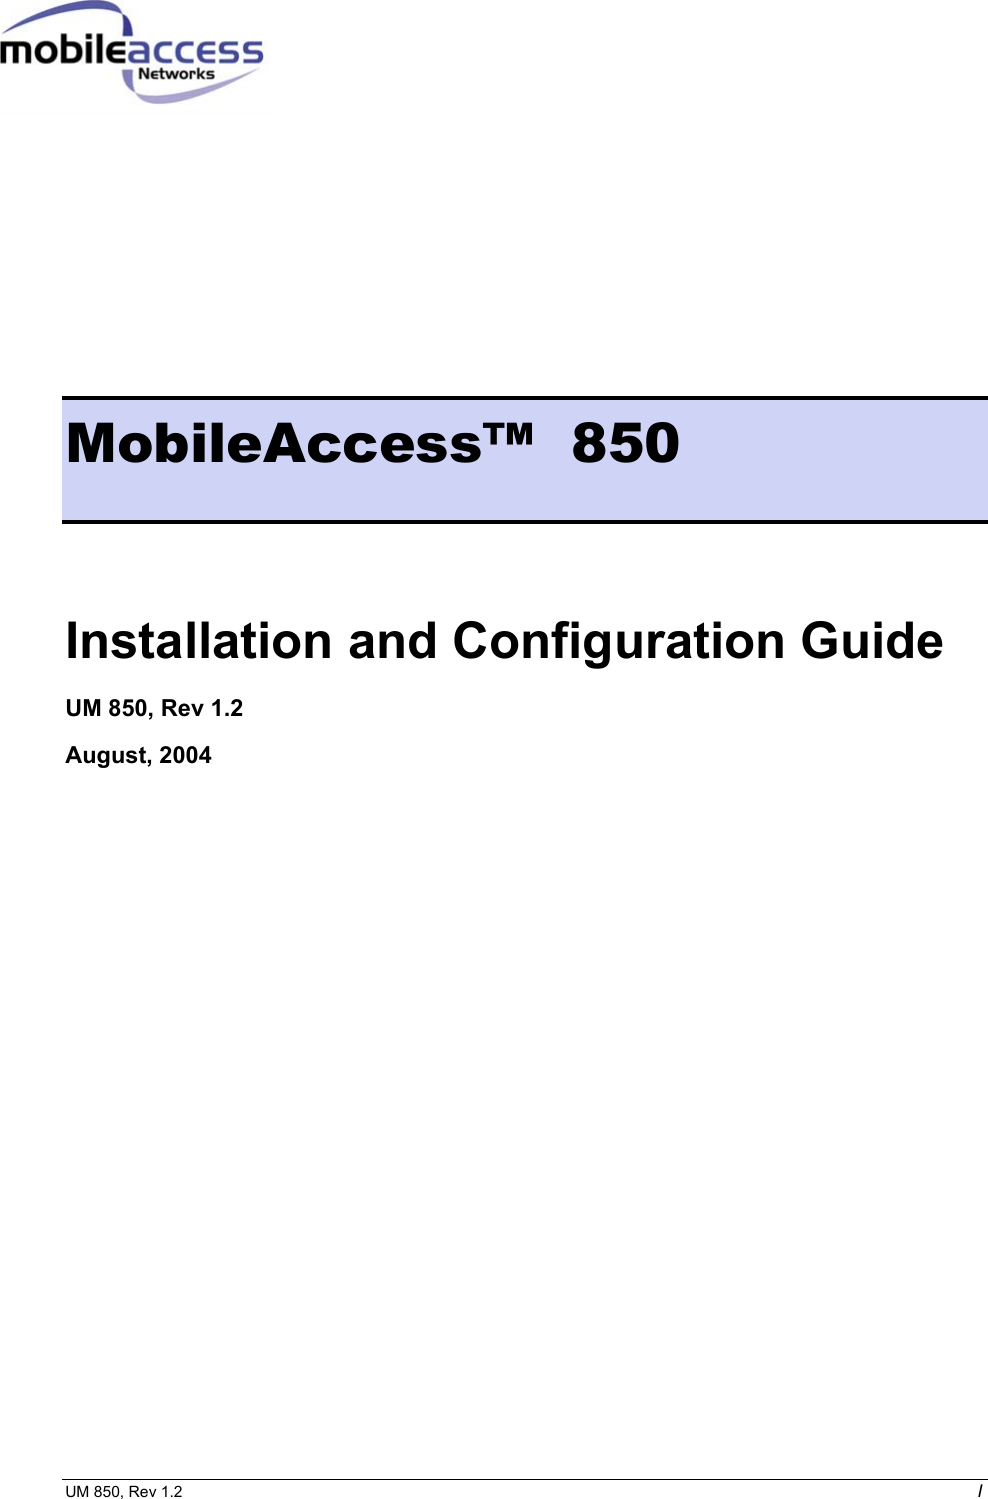  UM 850, Rev 1.2    I         MobileAccess™  850 Installation and Configuration Guide UM 850, Rev 1.2 August, 2004  